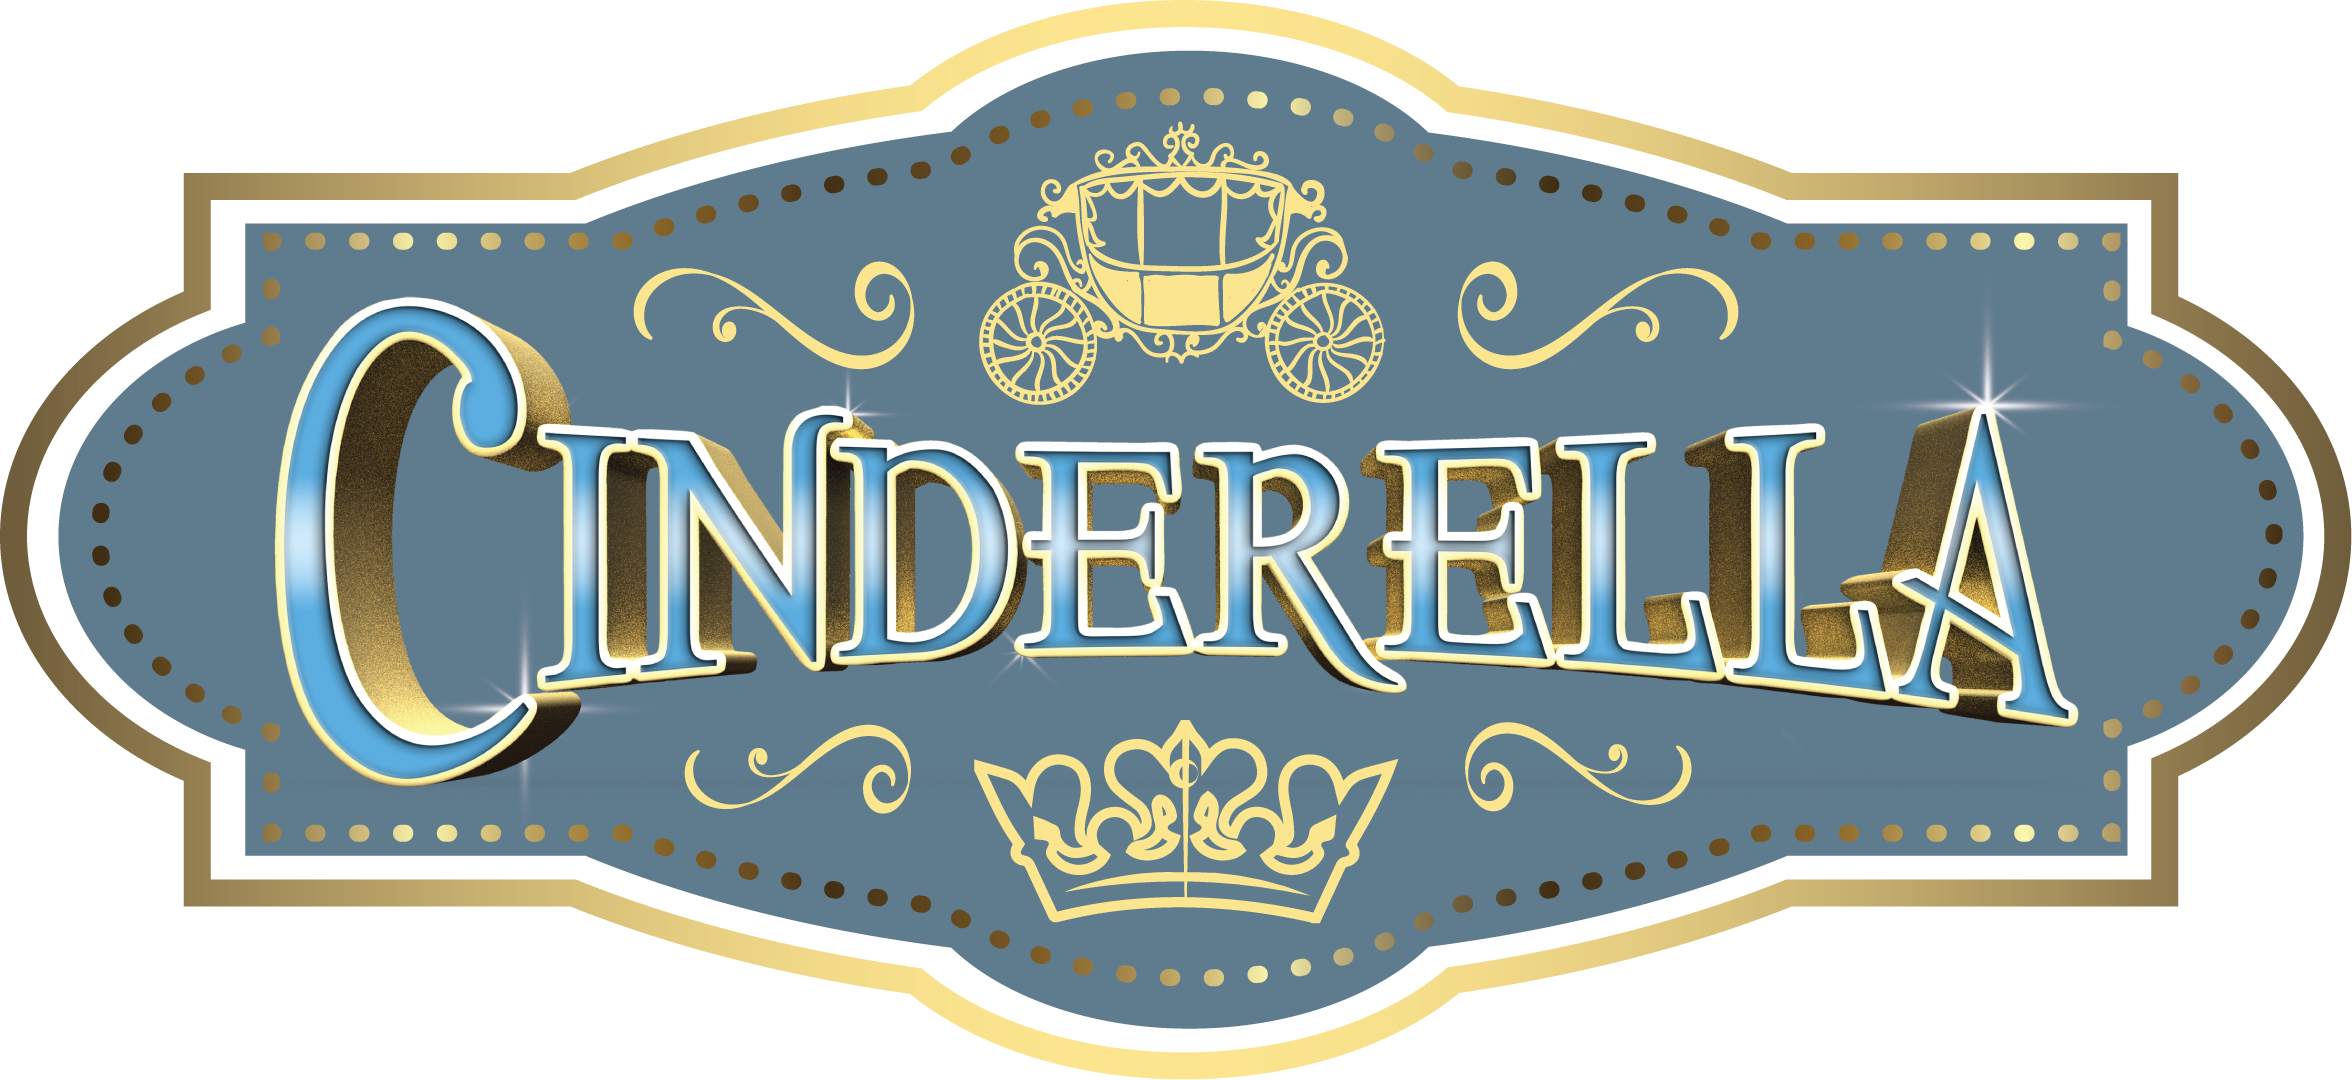 Cinderella 2.png - Cinderella